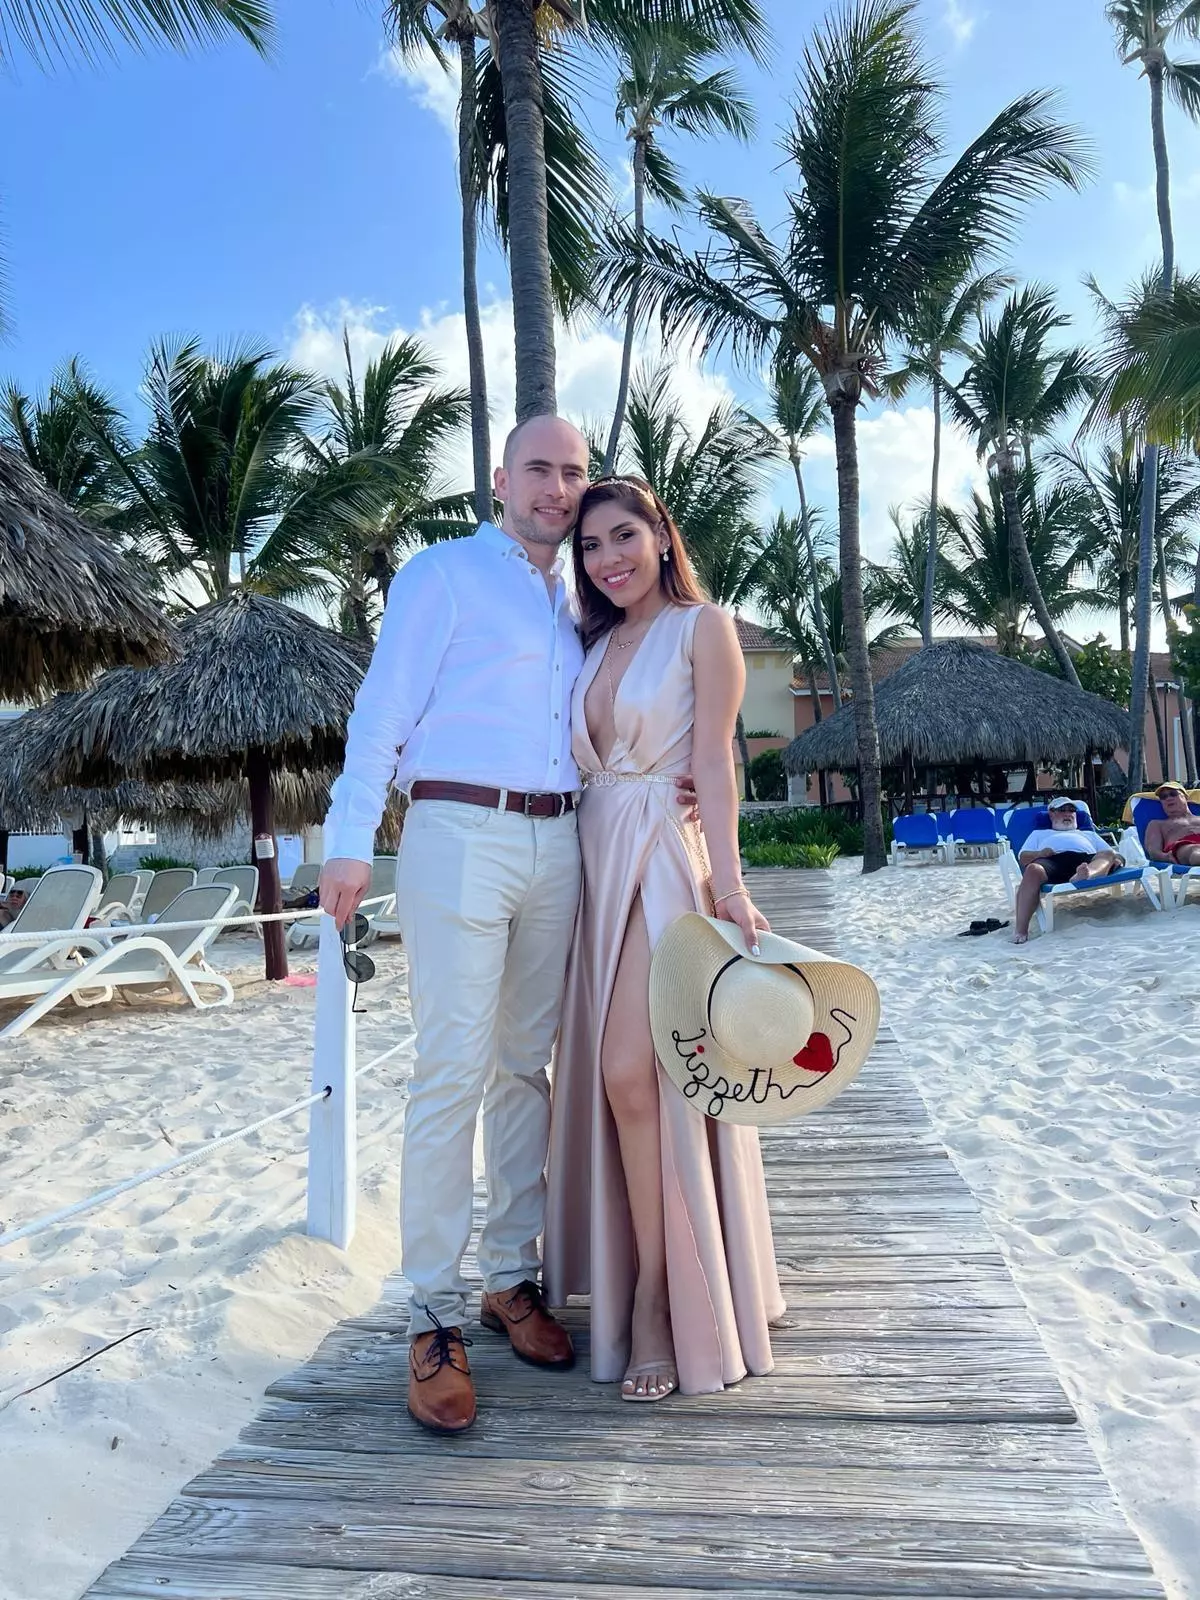 La boda soñada de una pareja de Palma en Cancún se convierte en una gran pesadilla